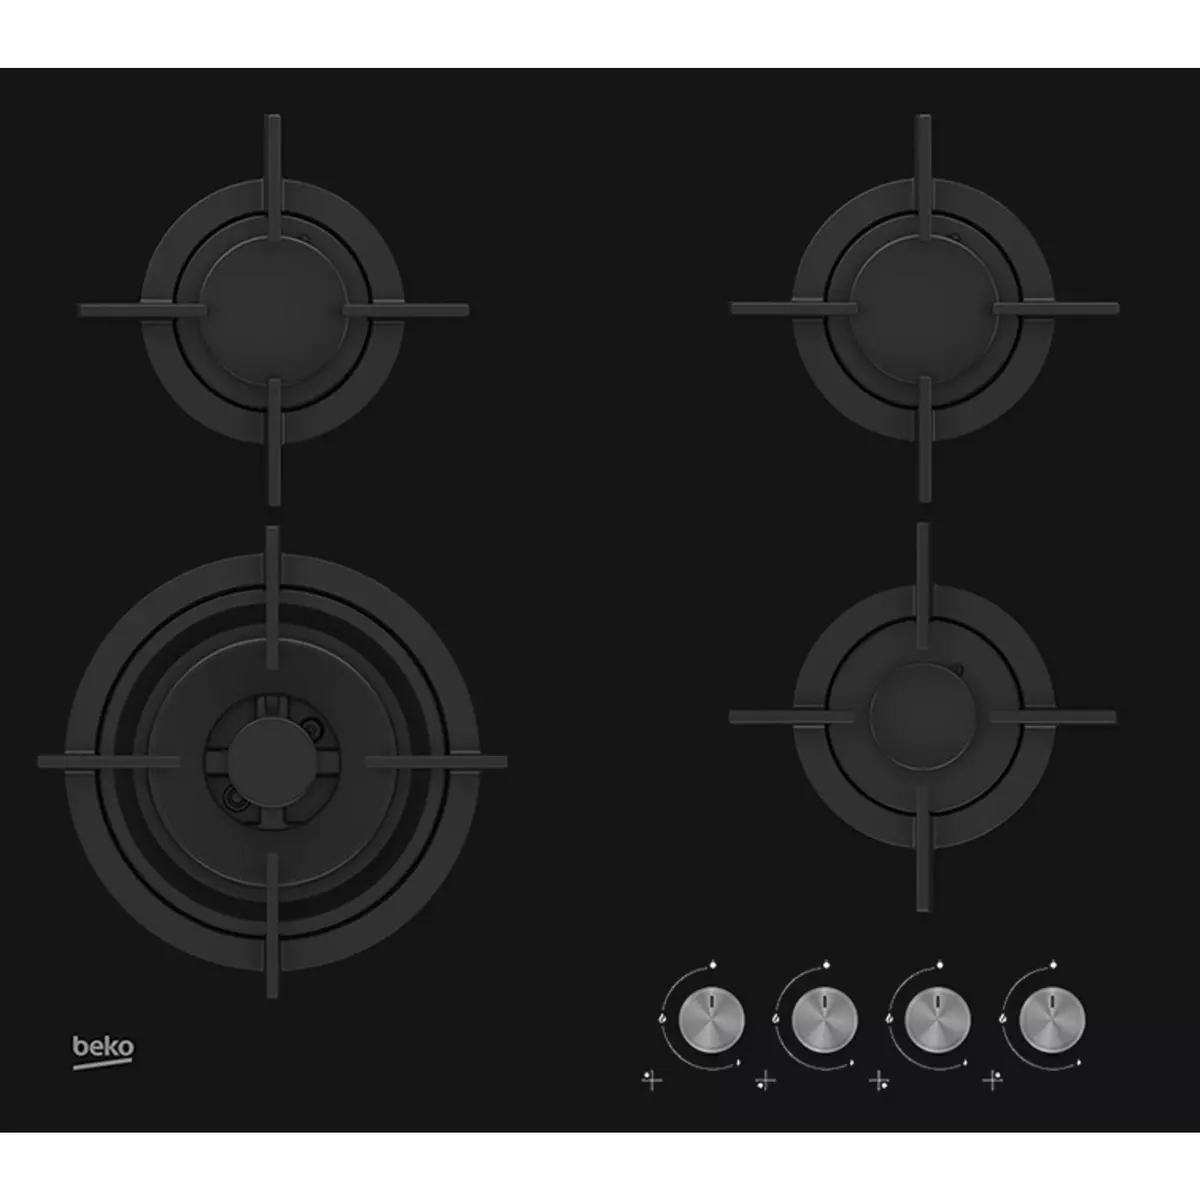 BEKO Table de cuisson à gaz HILW64222S, 60 cm, 4 foyers gaz dont 1 Wok double couronne